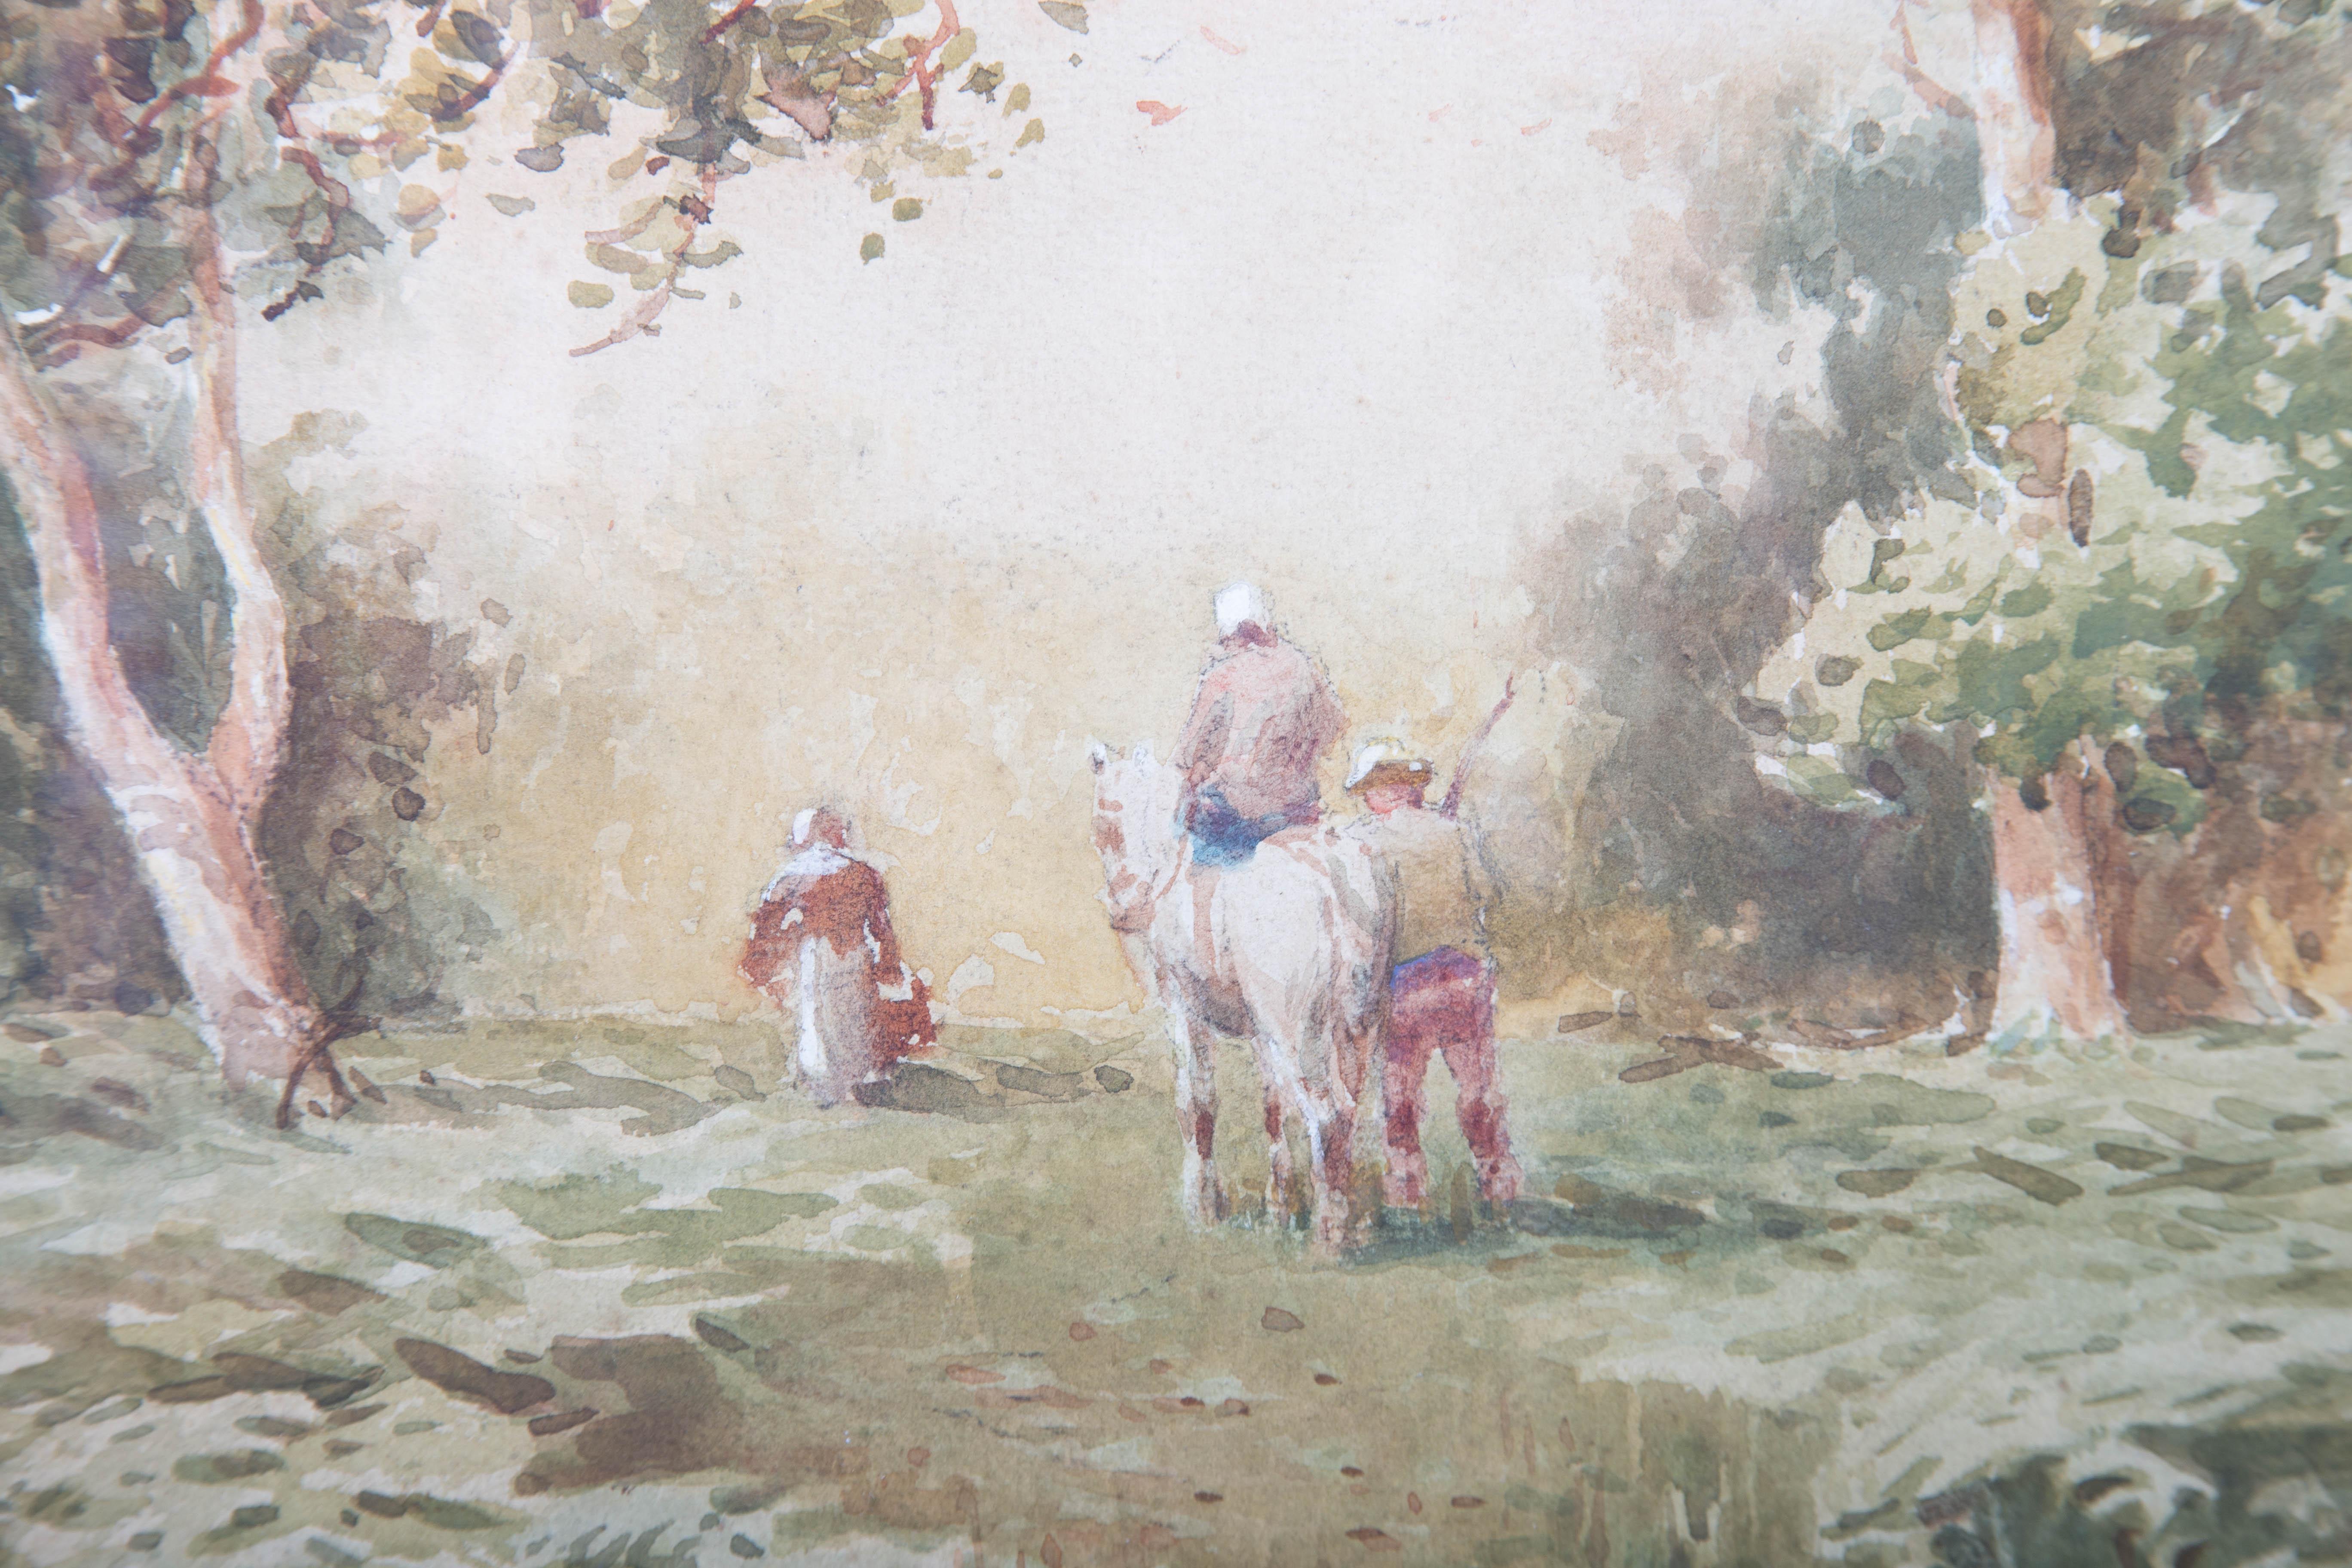 Arthur White - 19th Century Watercolour, Through the Woods 2